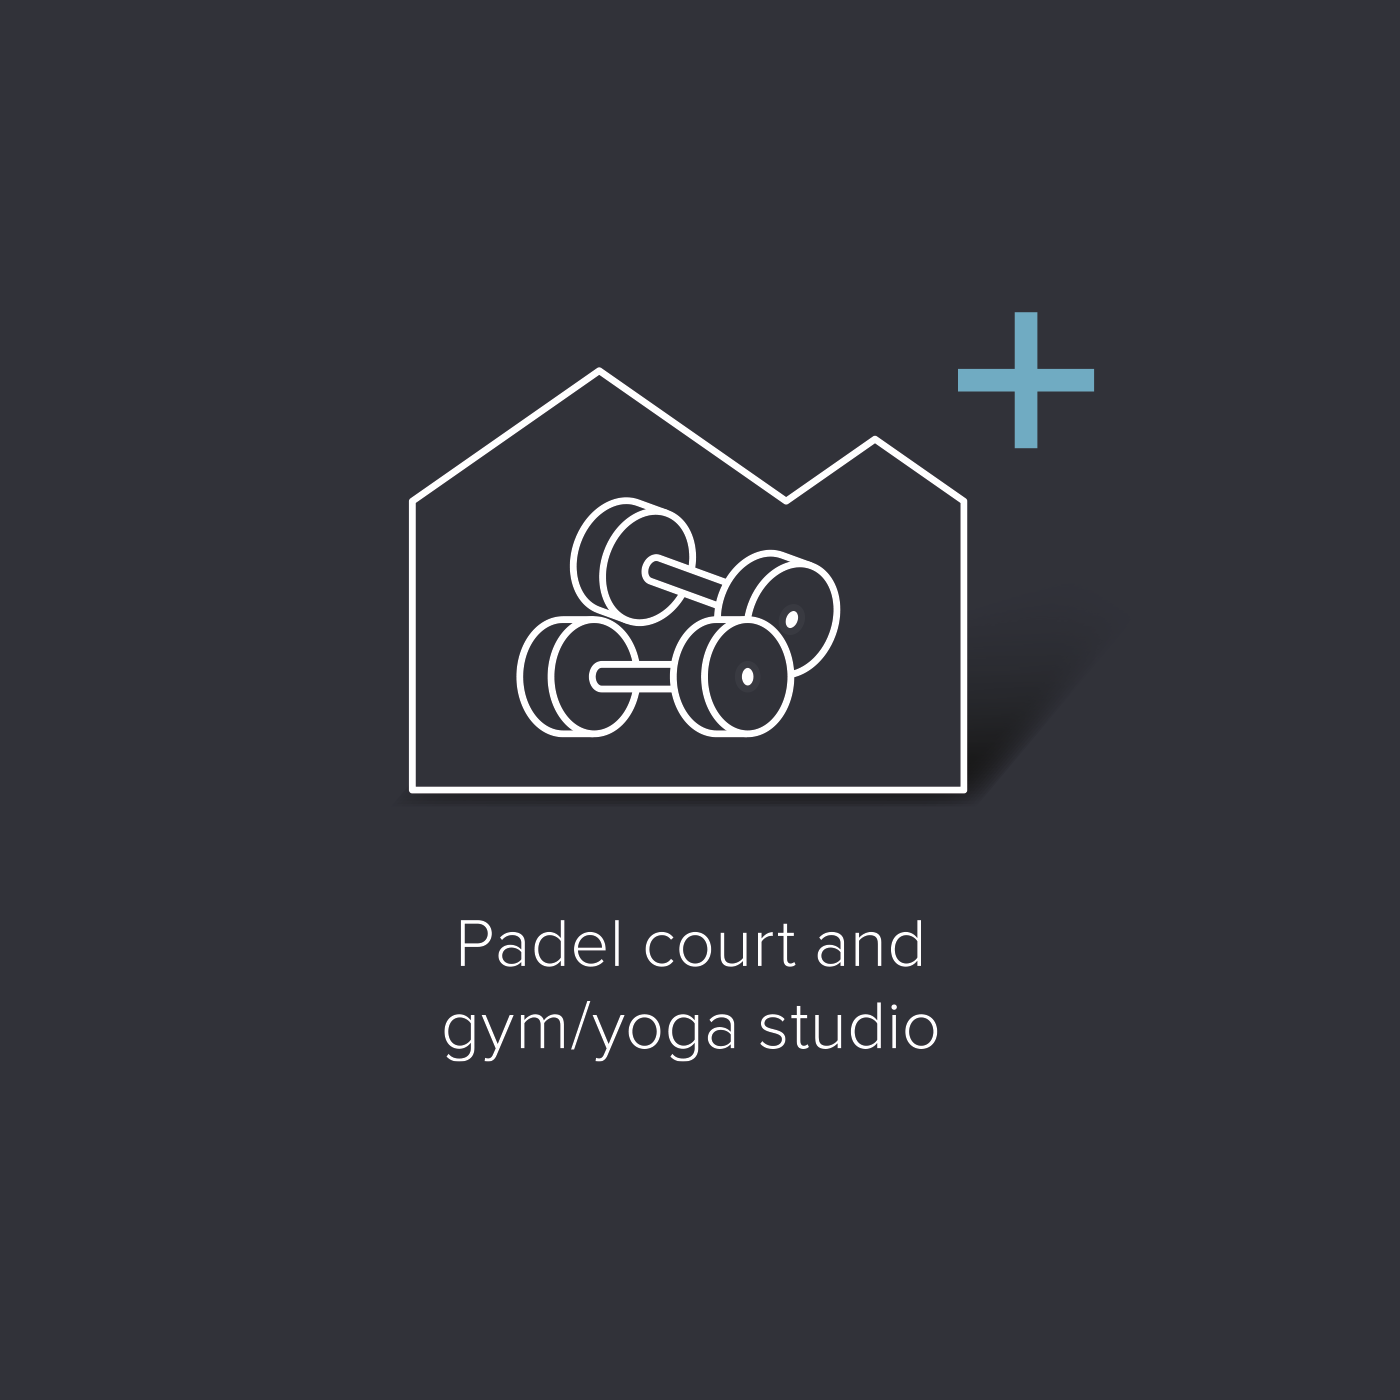 Padel court and gym/yoga studio